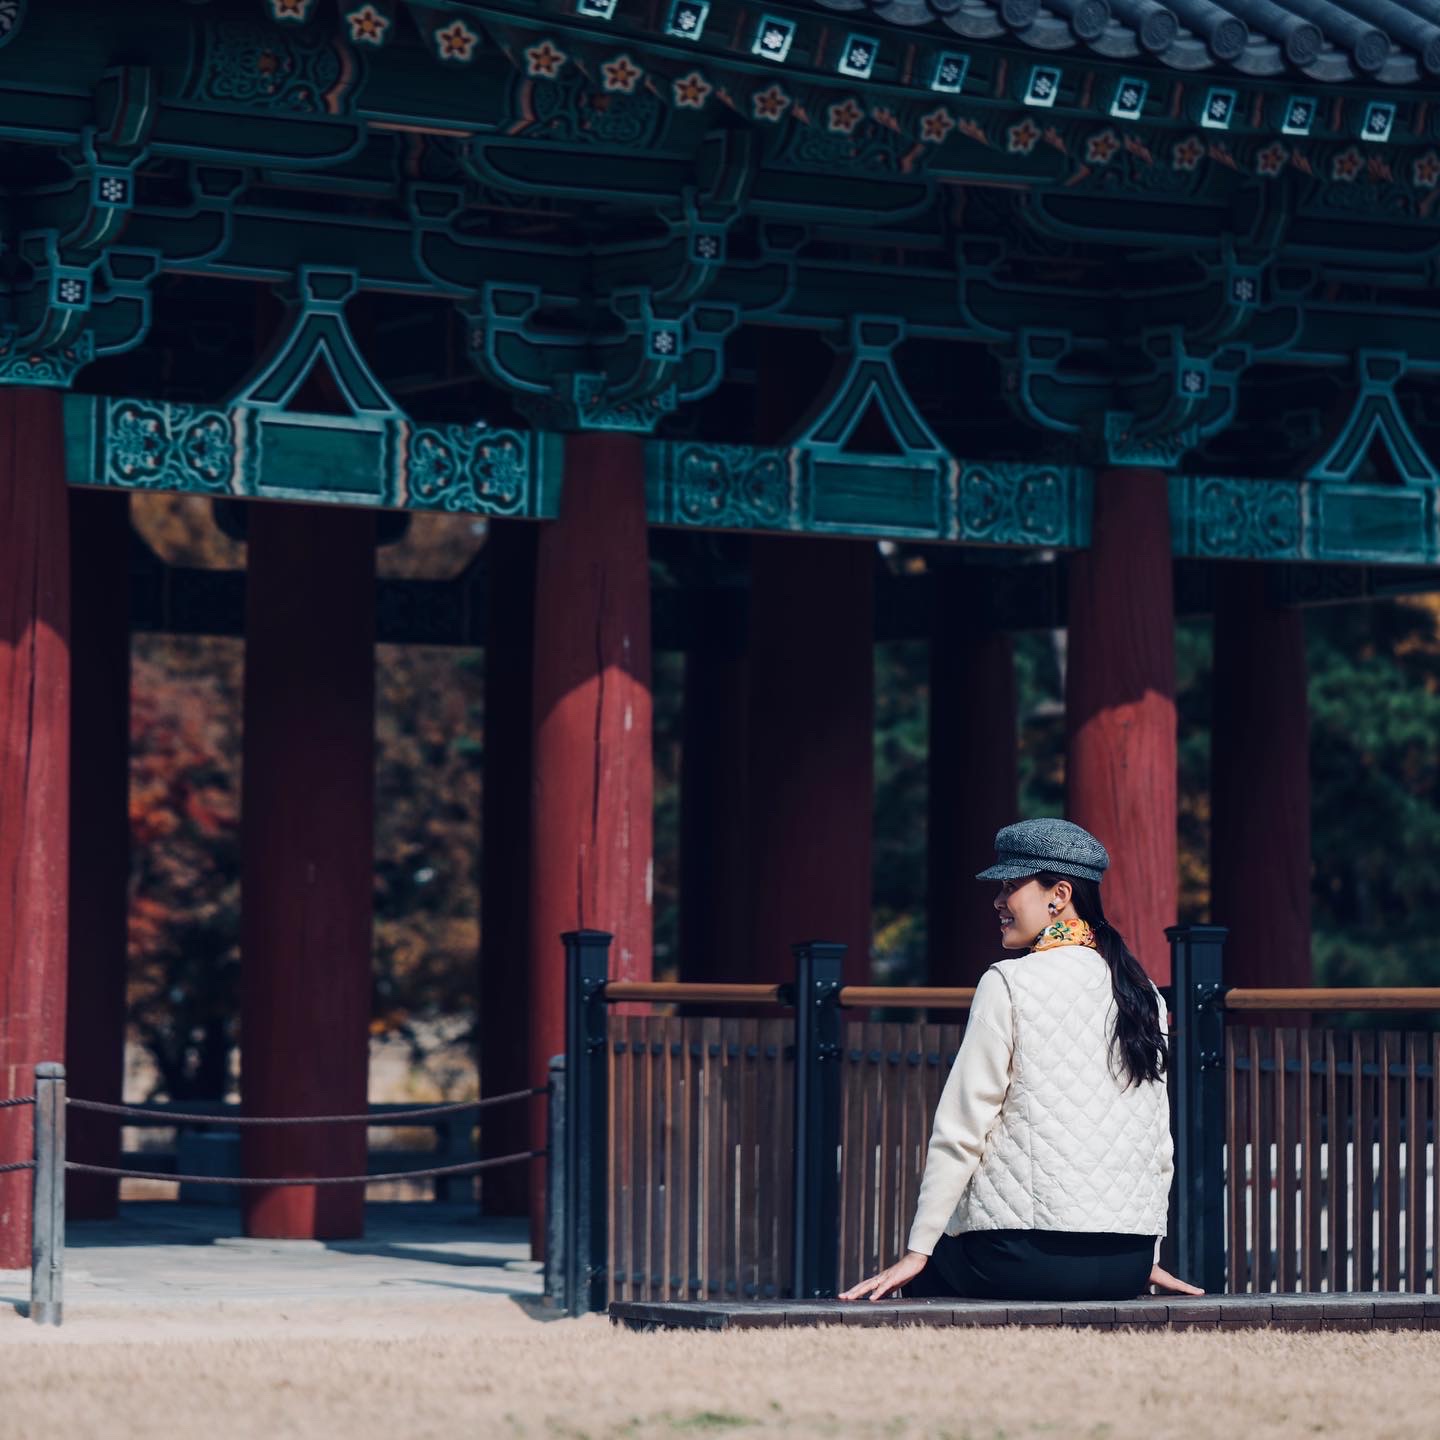 Kinh nghiệm đi du lịch Hàn Quốc mùa lá đỏ lãng mạn - Ảnh 5.